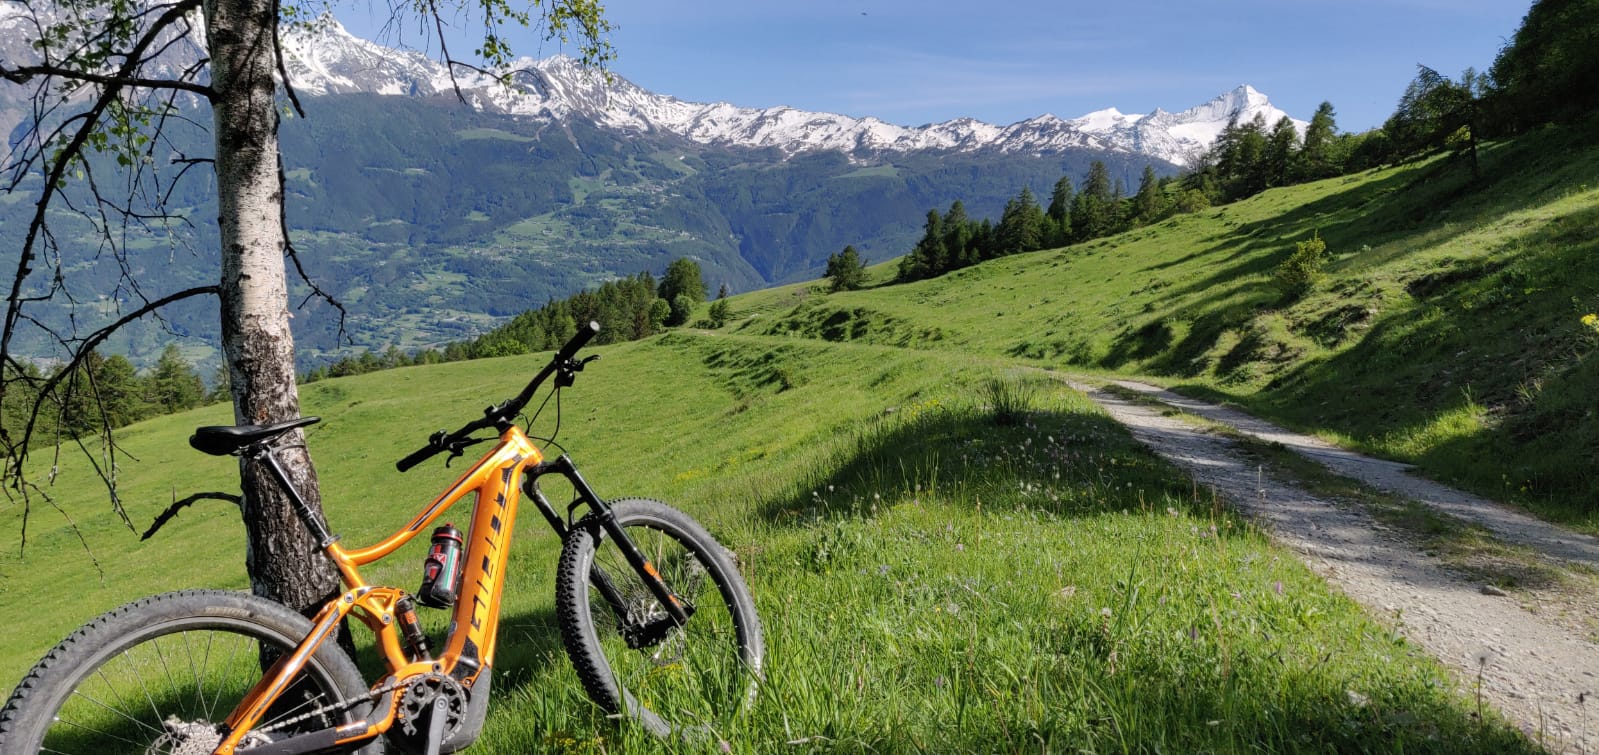 Offerta e-bike Valle d’Aosta